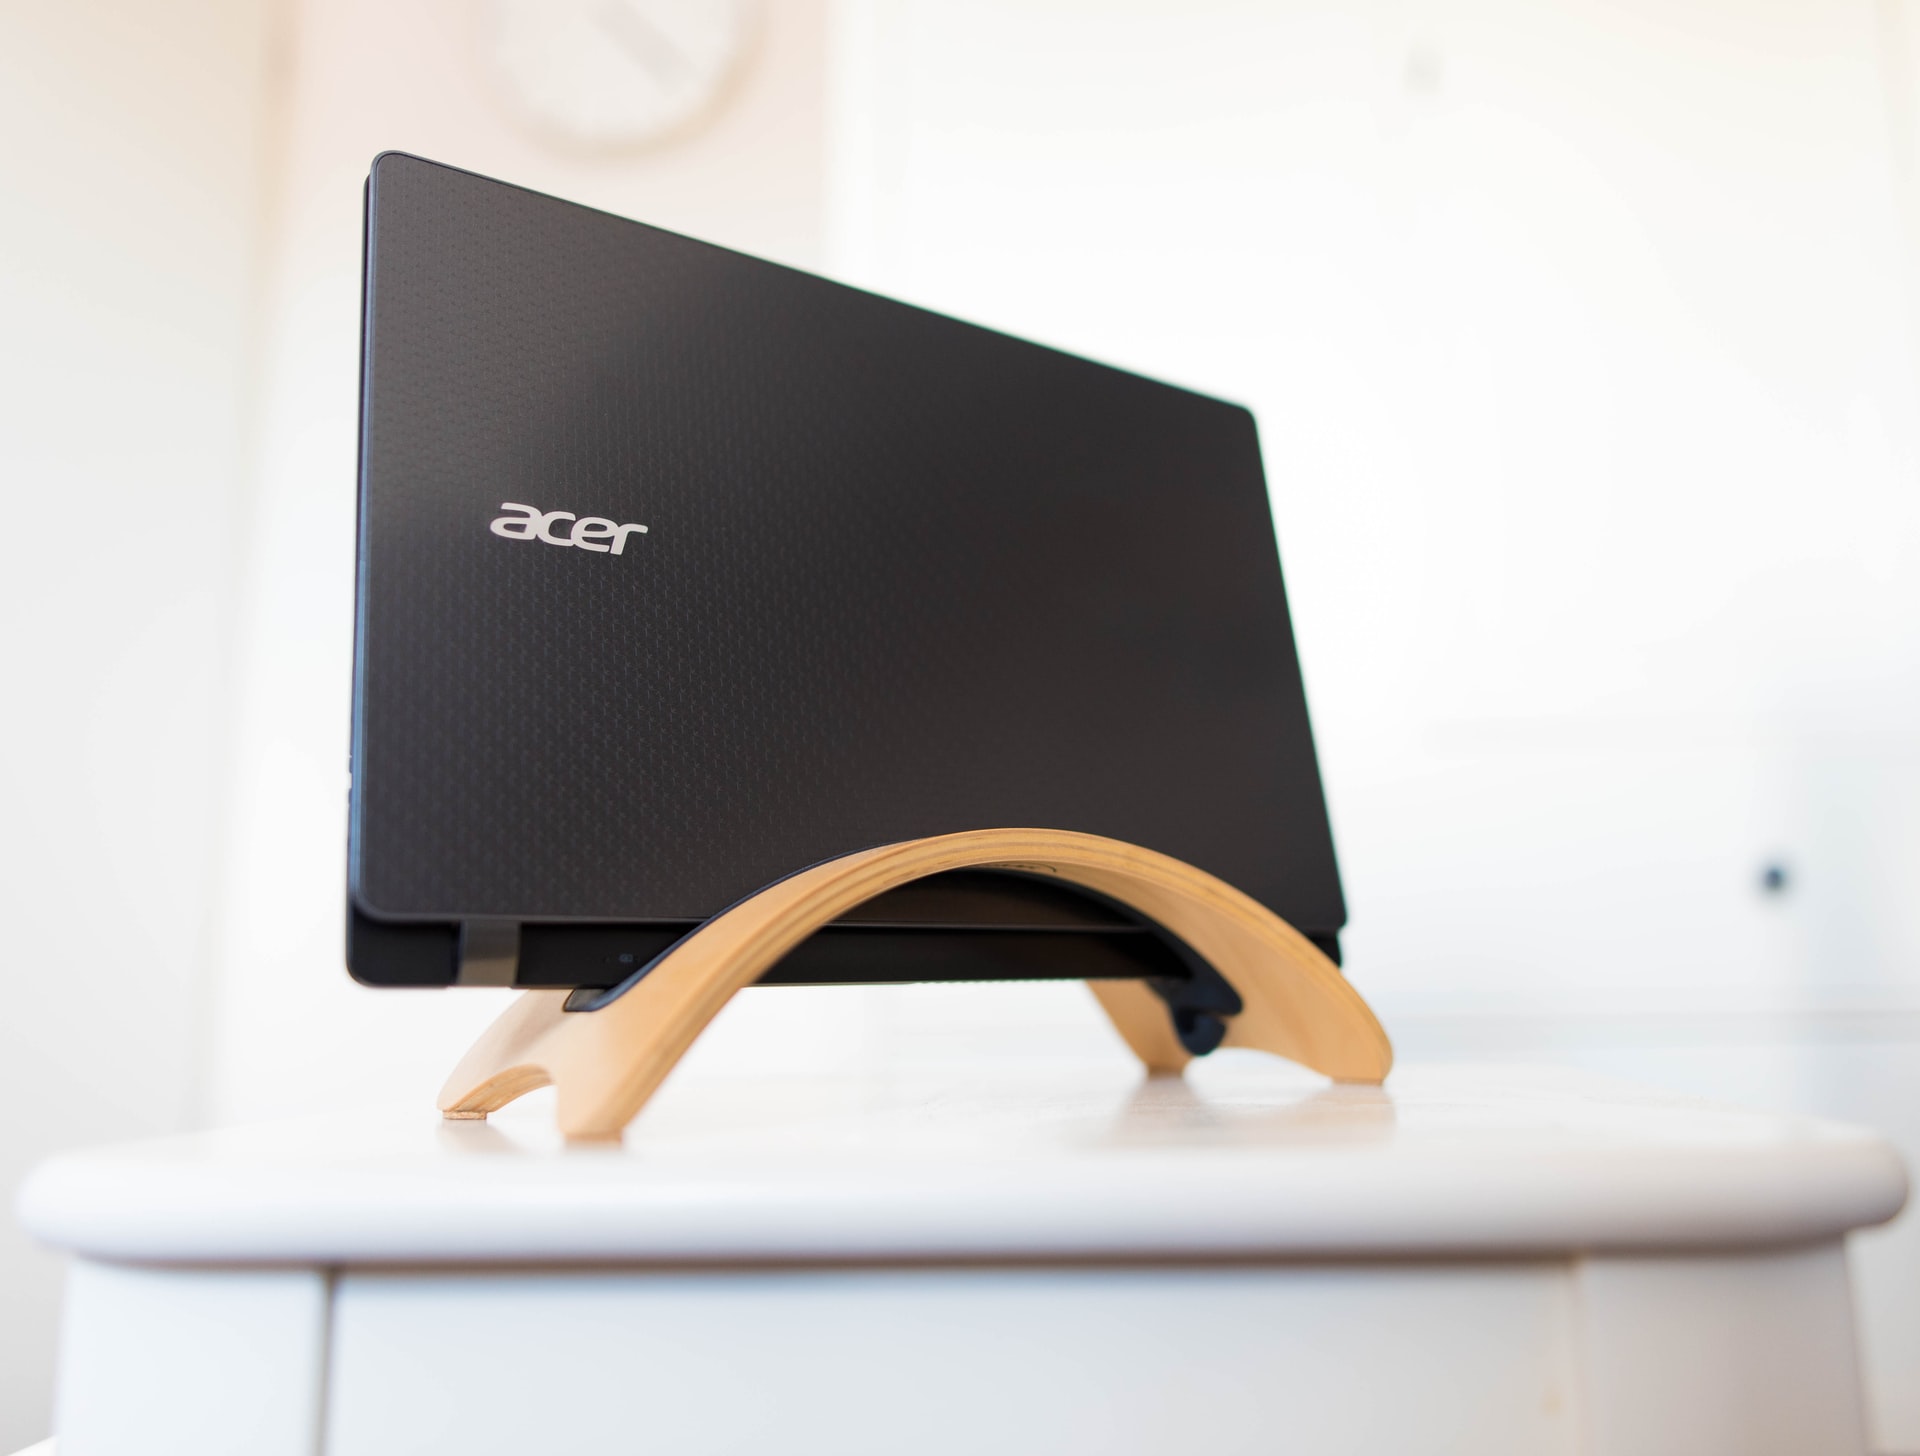 Acer meldet erfolgreichen Angriff auf seine Server